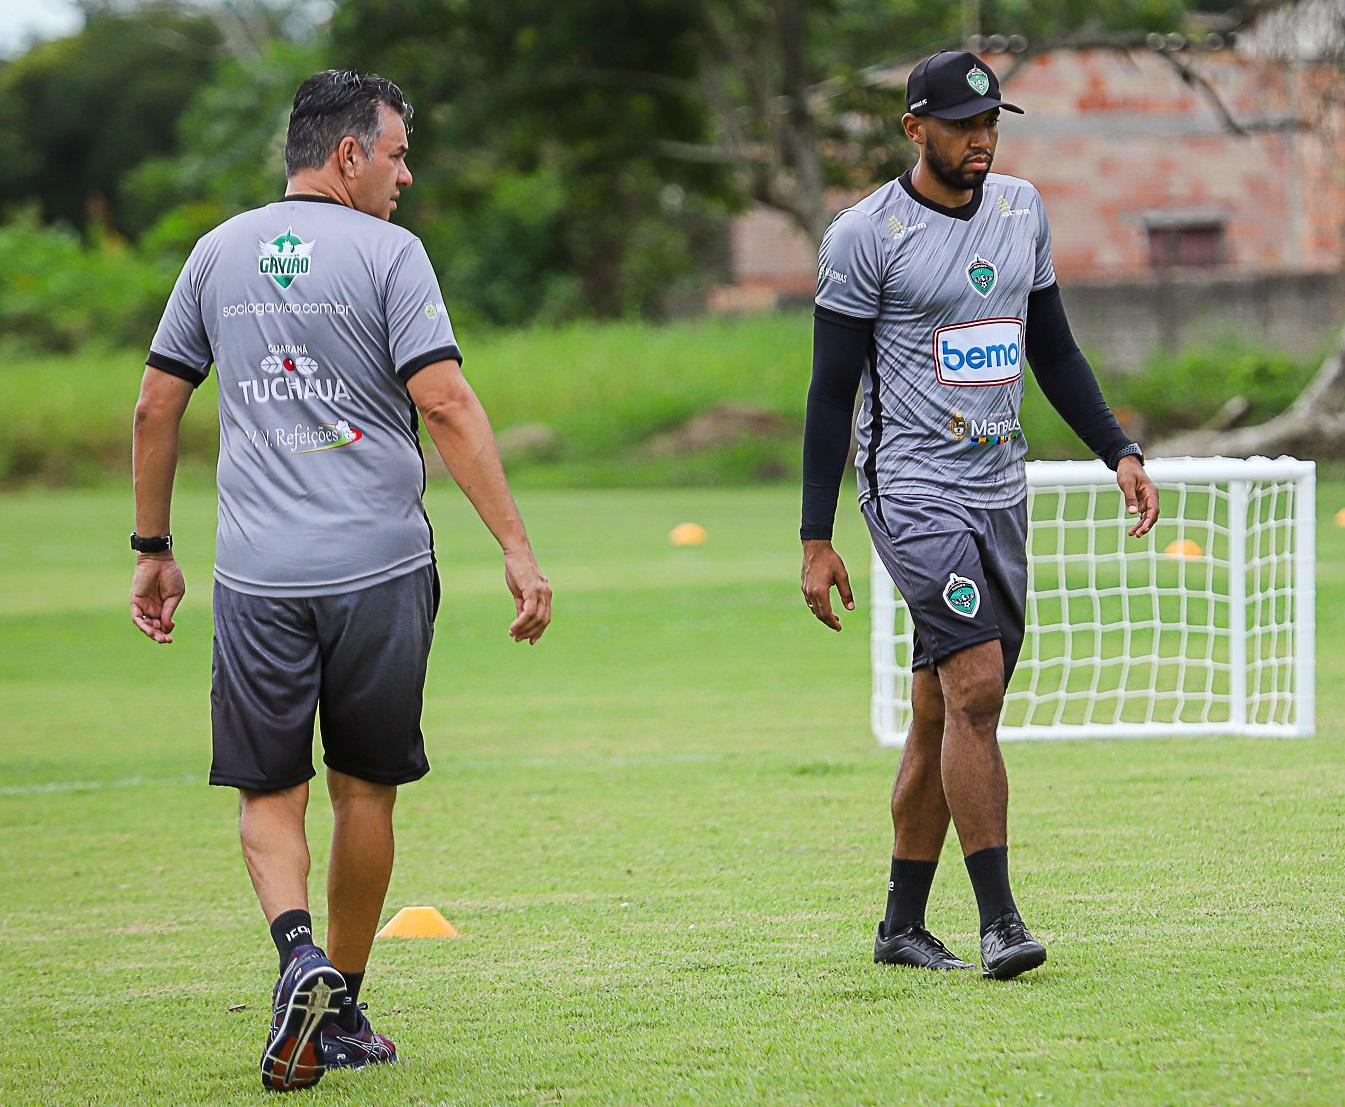 Serviço de jogo: Manaus FC e Amazonas fazem duelo de Série C no Campeonato Amazonense